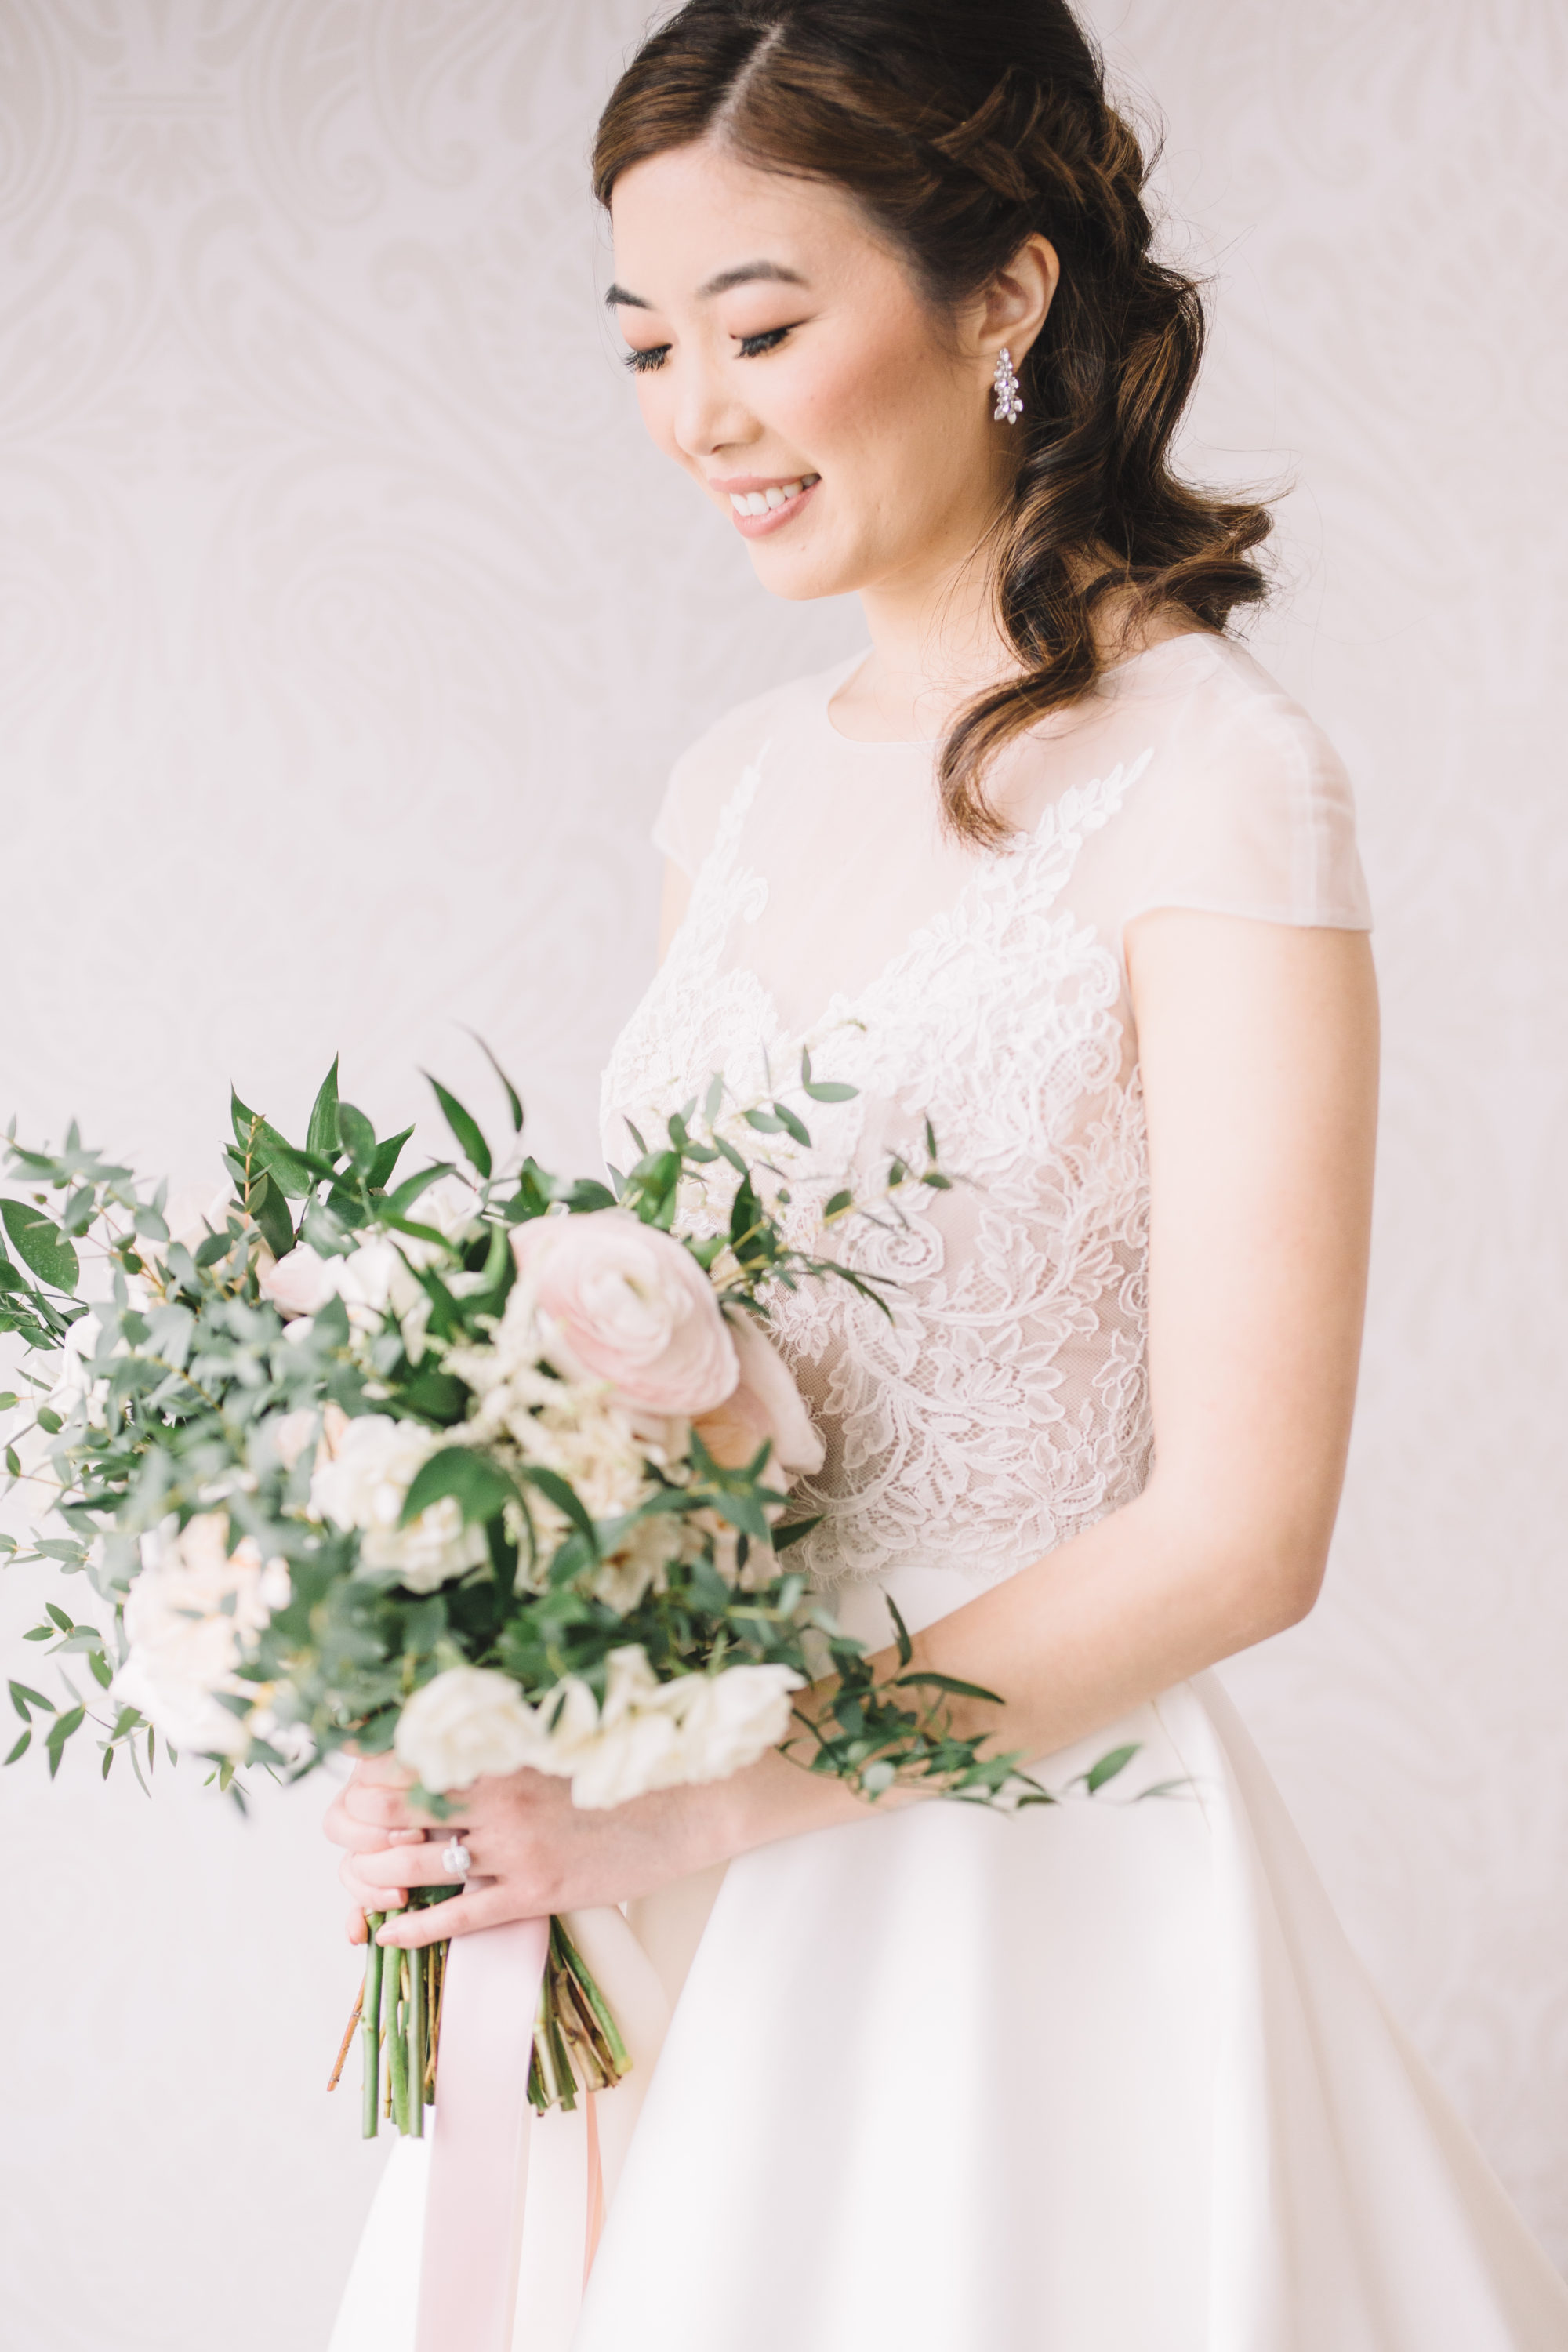 Bride Smiling - bridal portrait